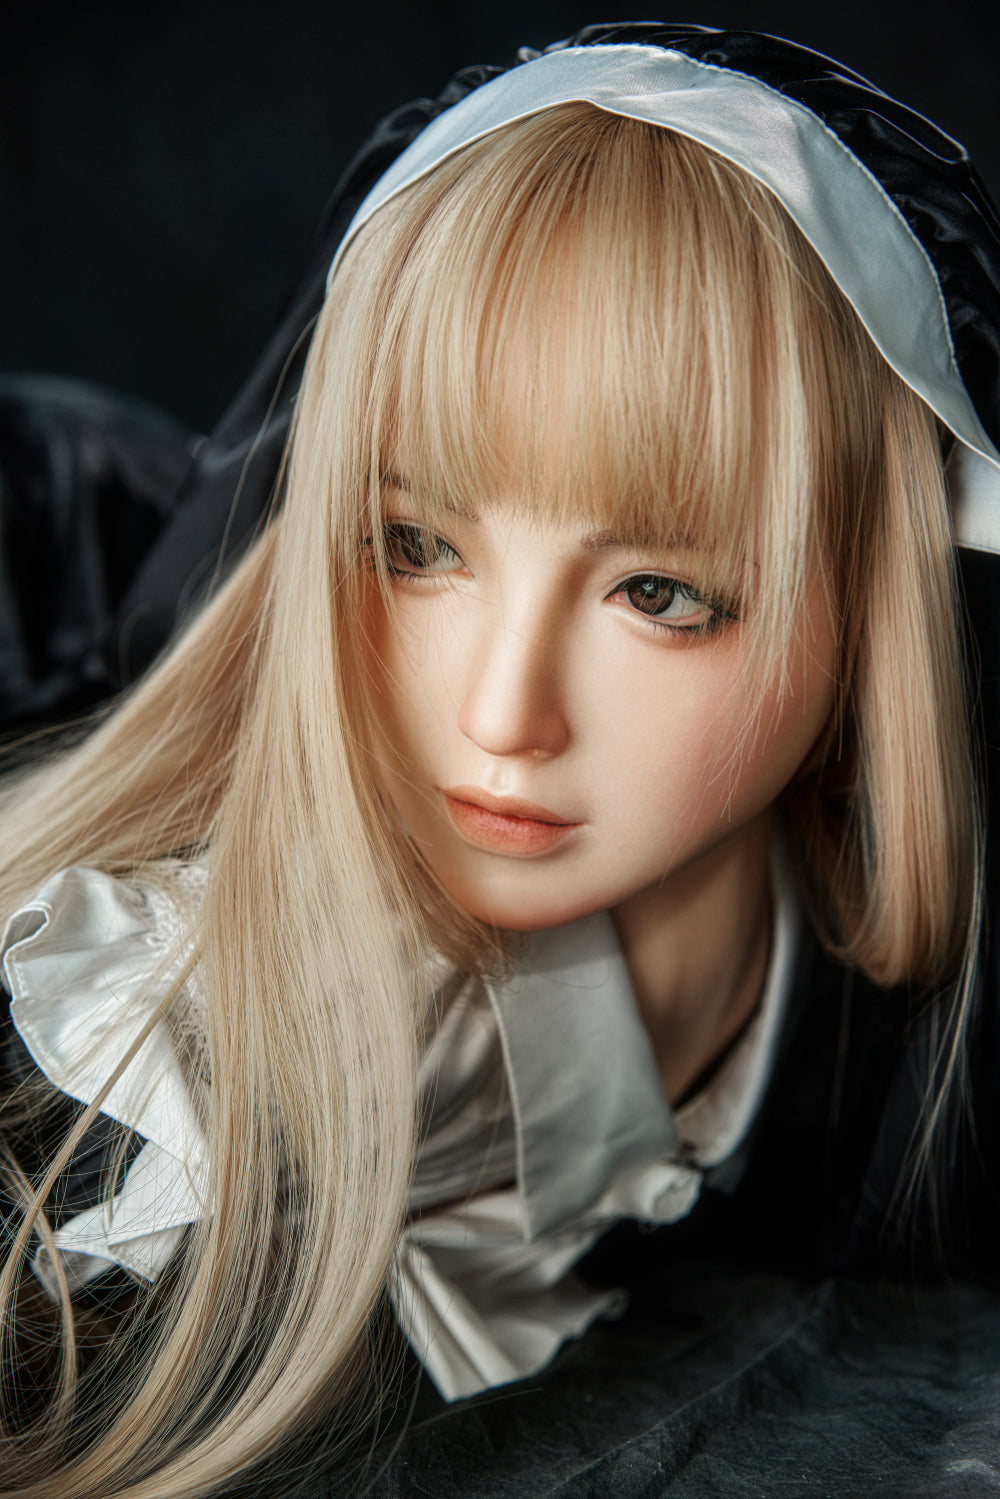 Zelex Doll 143 cm G Silicone - Fai | Sex Dolls SG